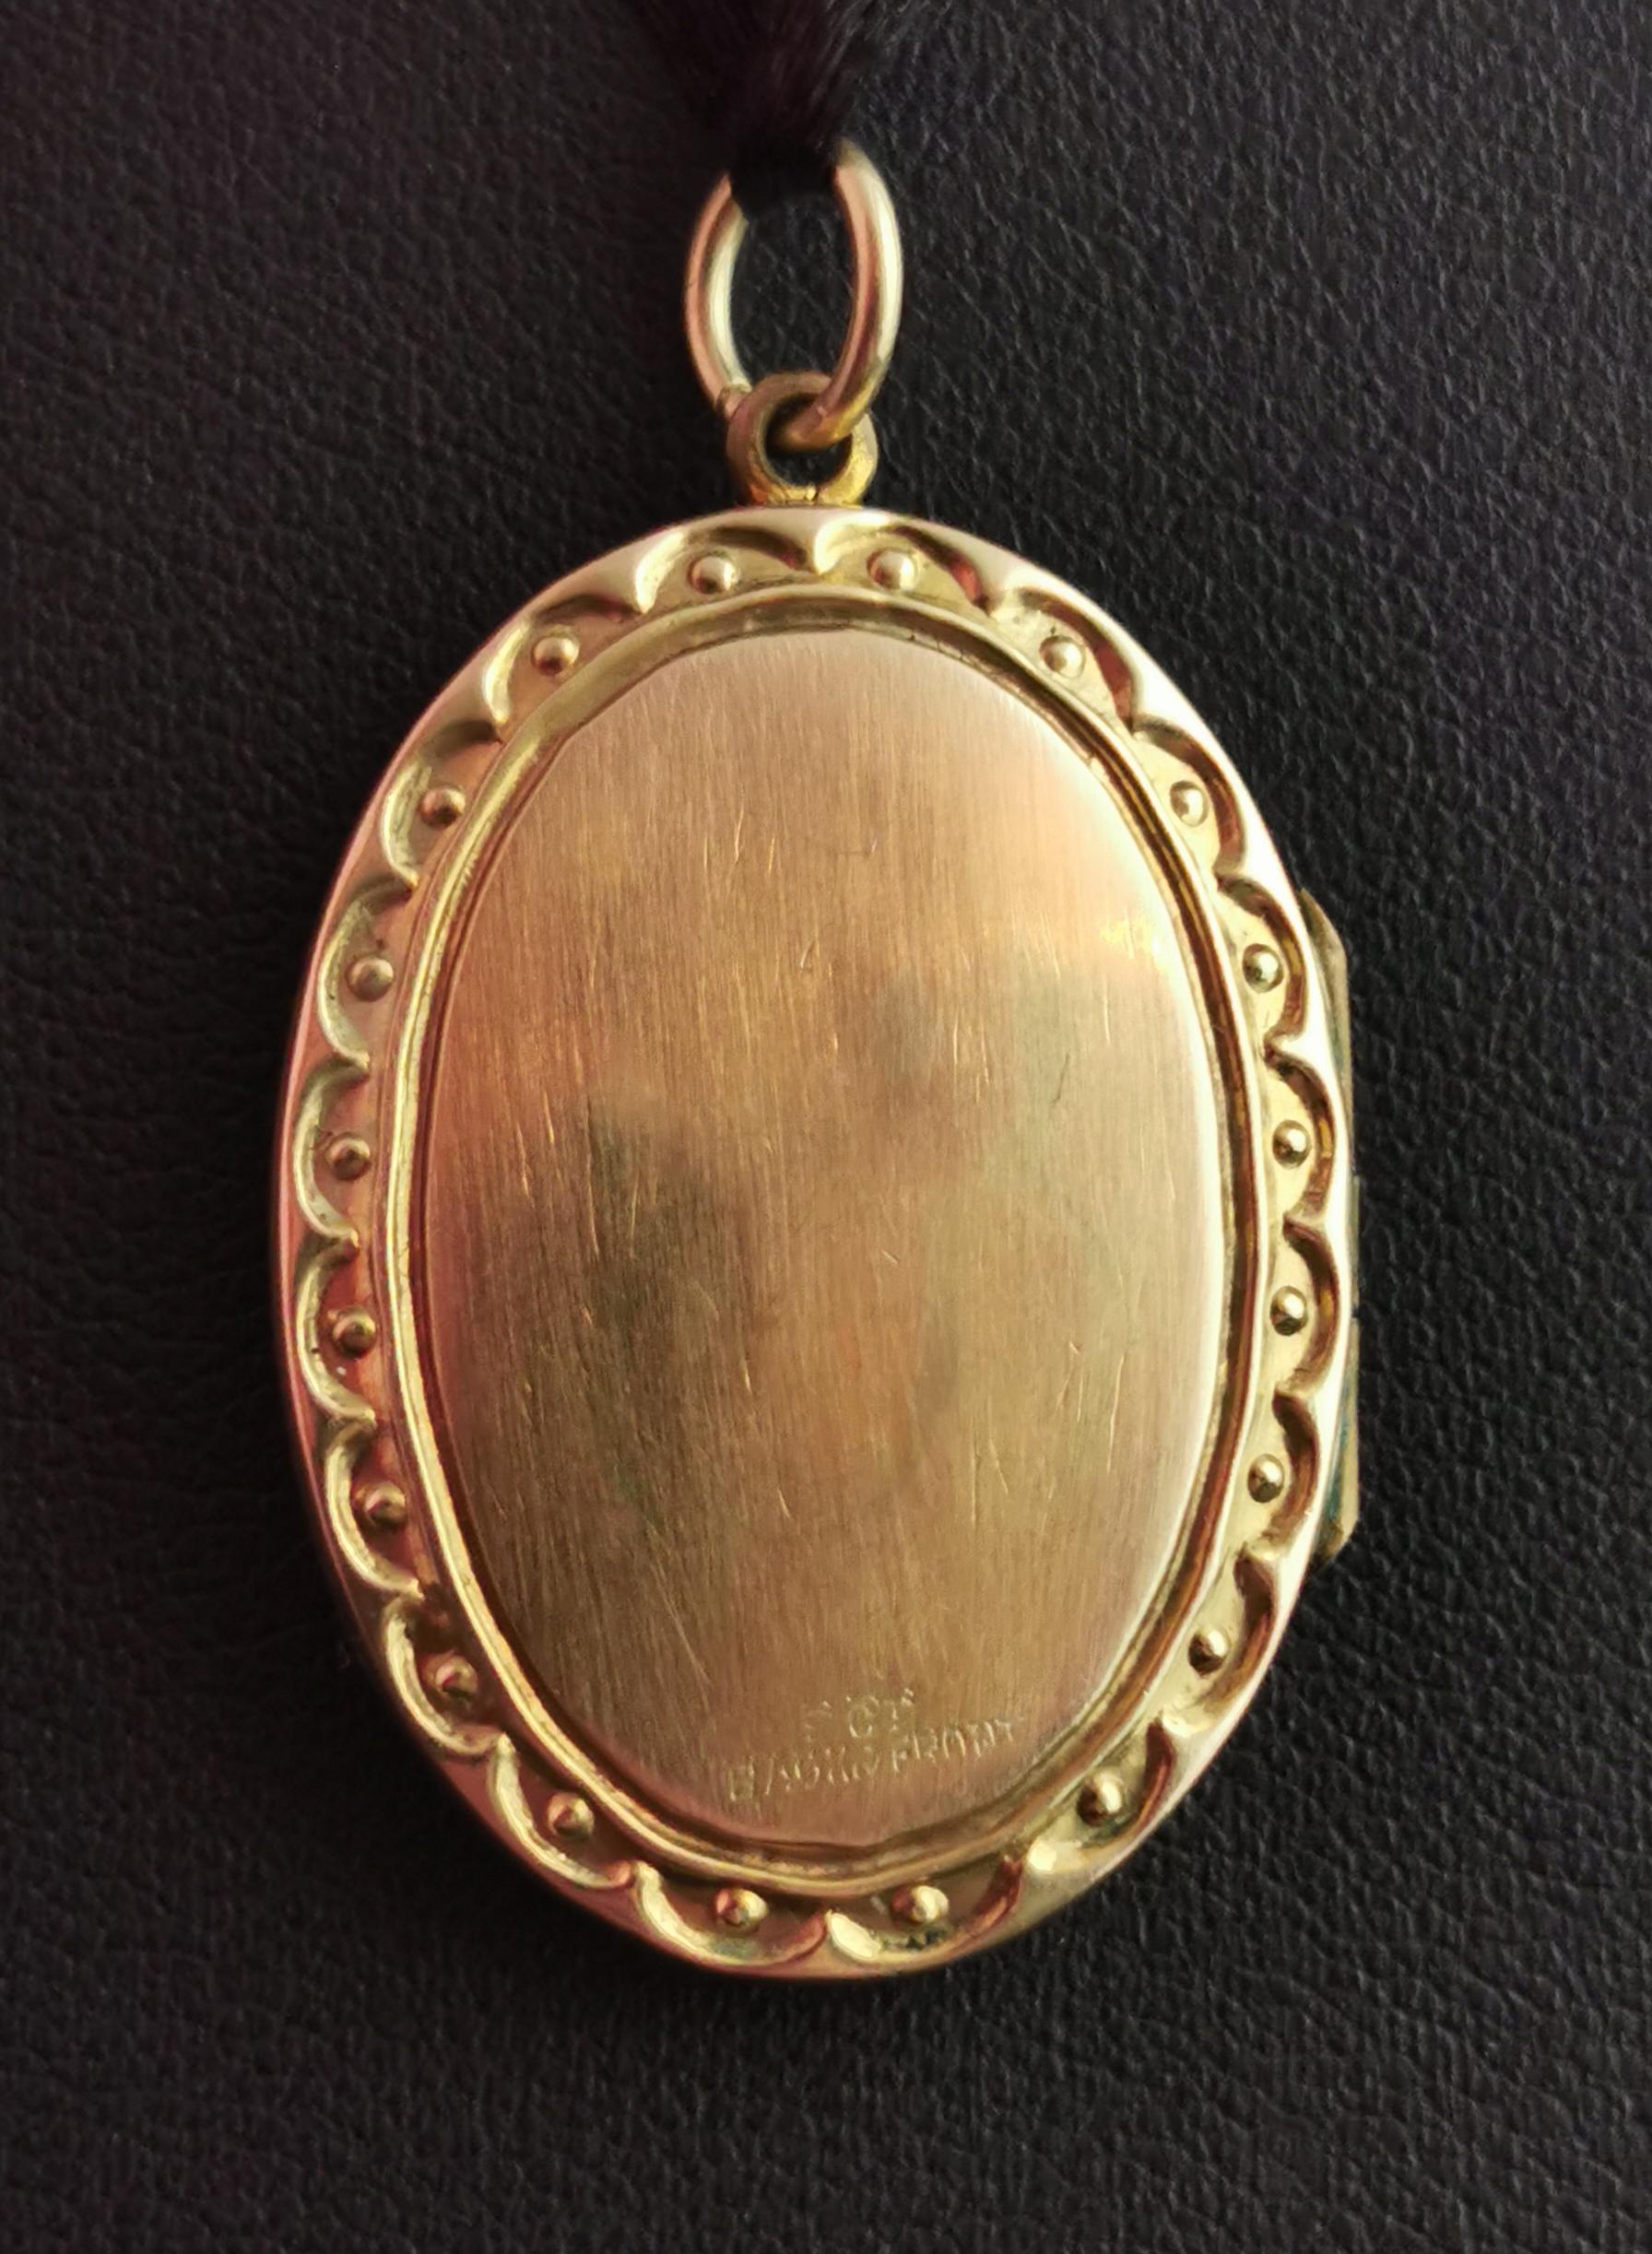 Antique Edwardian 9k gold front and back locket pendant, engraved  7